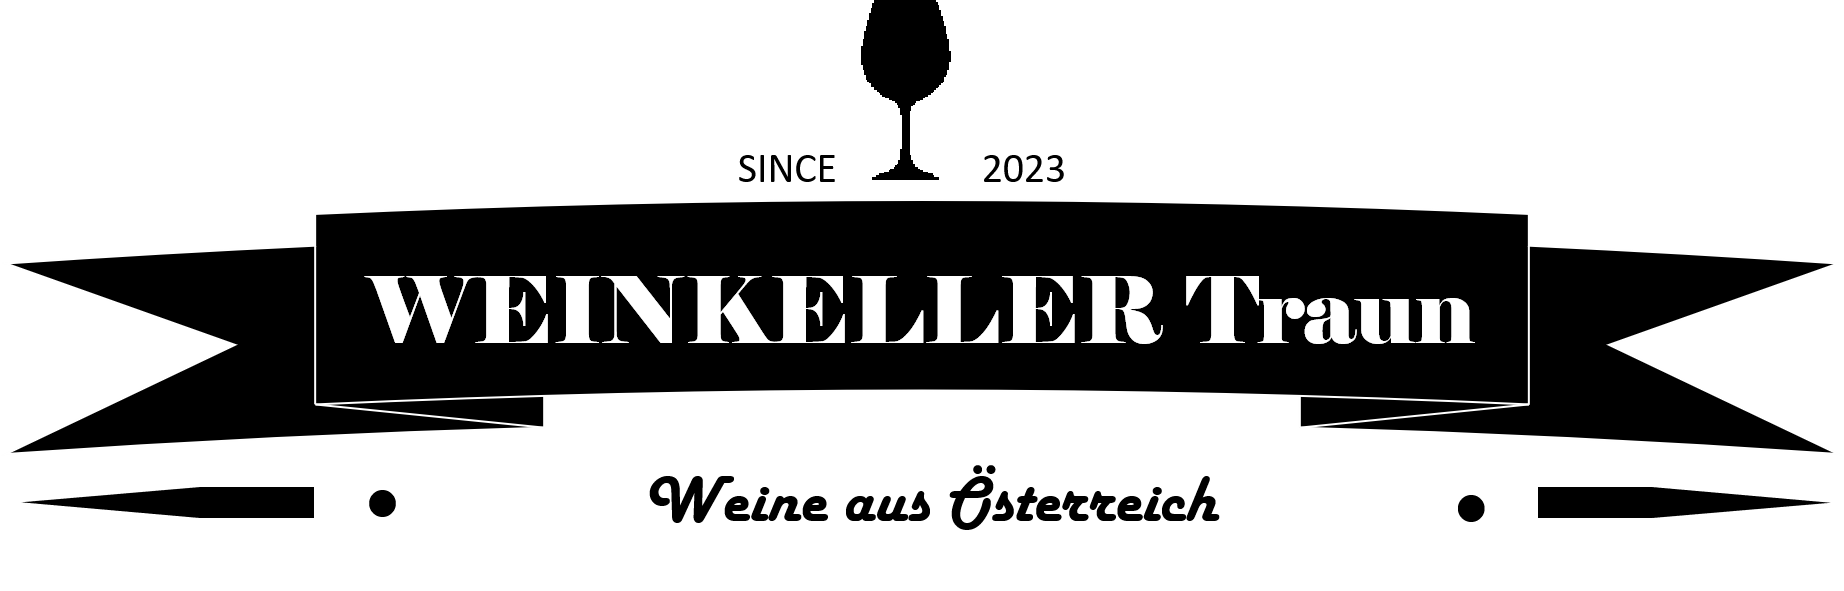 Weinkeller Traun